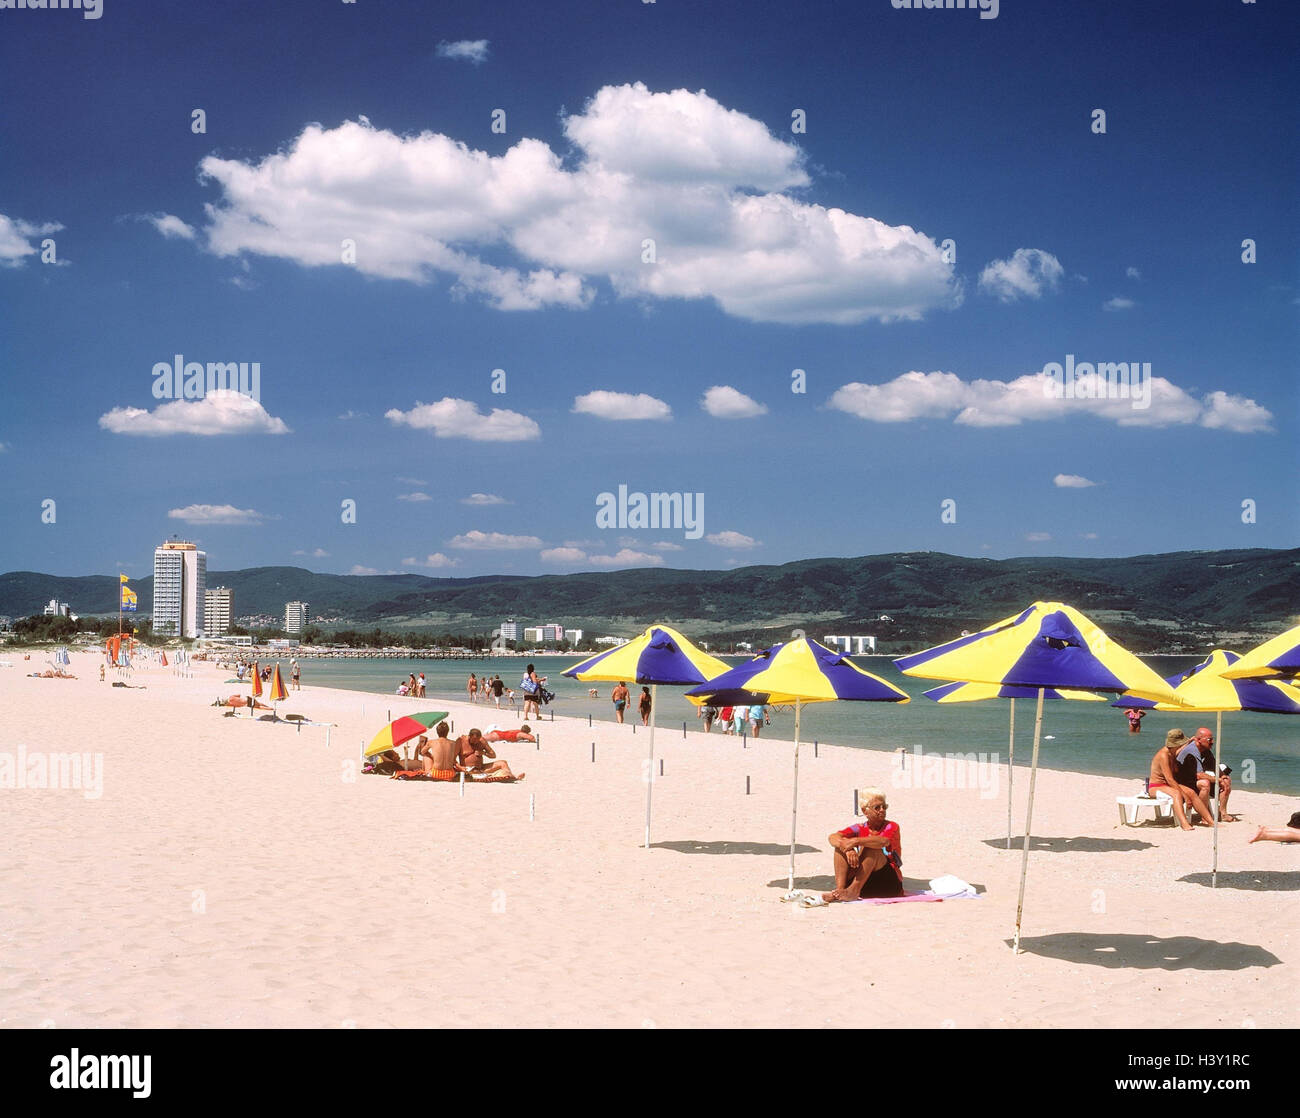 La Bulgarie, plage solaire, baigneurs, au Sud-Est, Europe, Slantchev Briag, station balnéaire, plage de sable, plage, parasols, tourisme, Tourisme, vacances, loisirs, repos, plage, bain solaire maison de vacances, d'été, à l'extérieur Banque D'Images